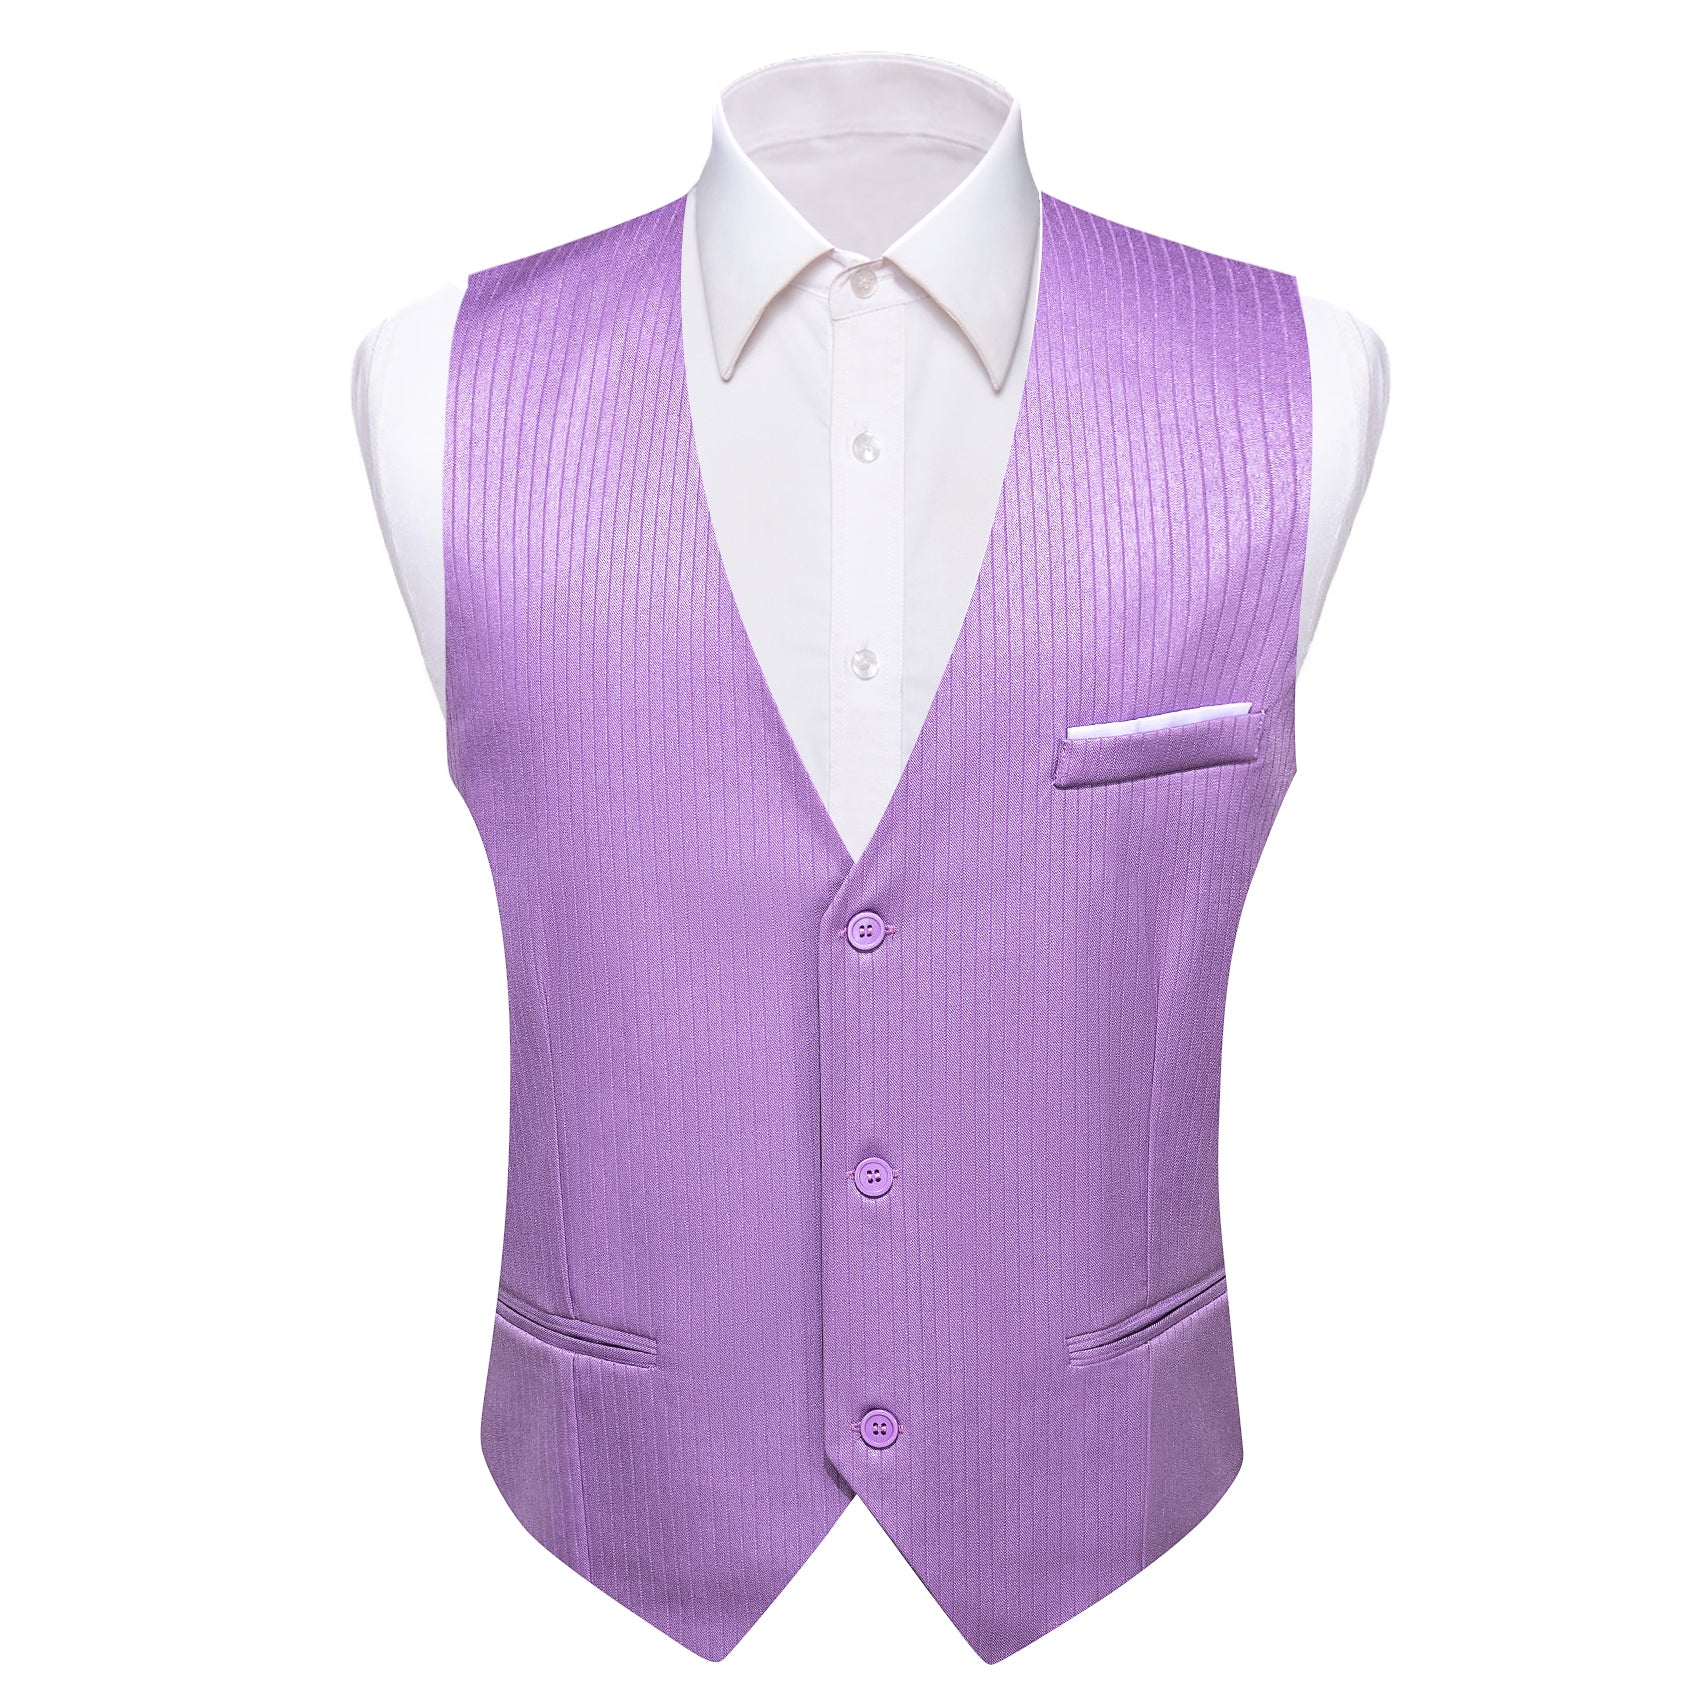 Barry.wang Pale Lilace Solid Business Vest Suit